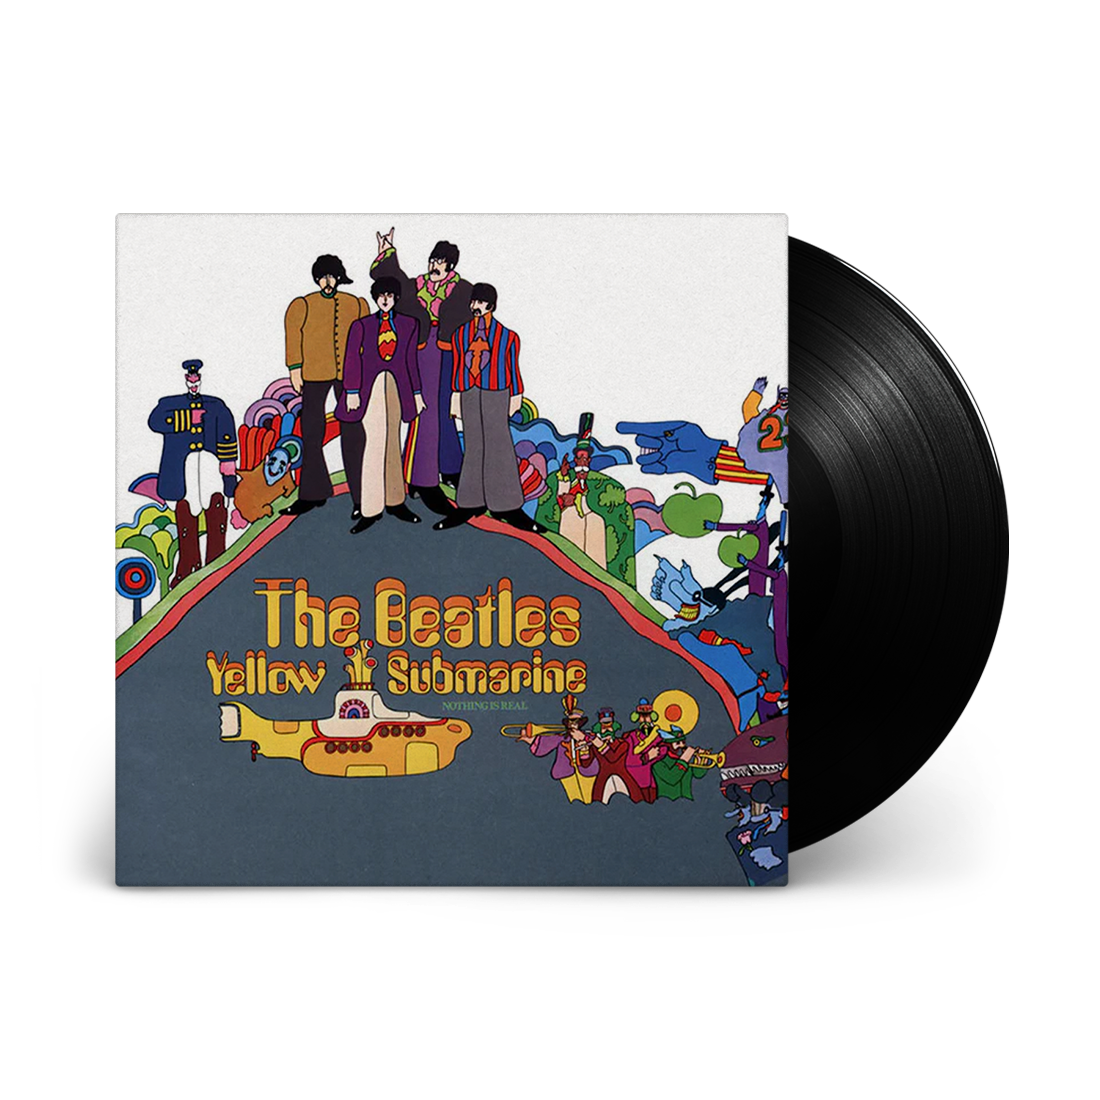 The Beatles - Yellow Submarine (Stereo 180 Gram Vinyl)